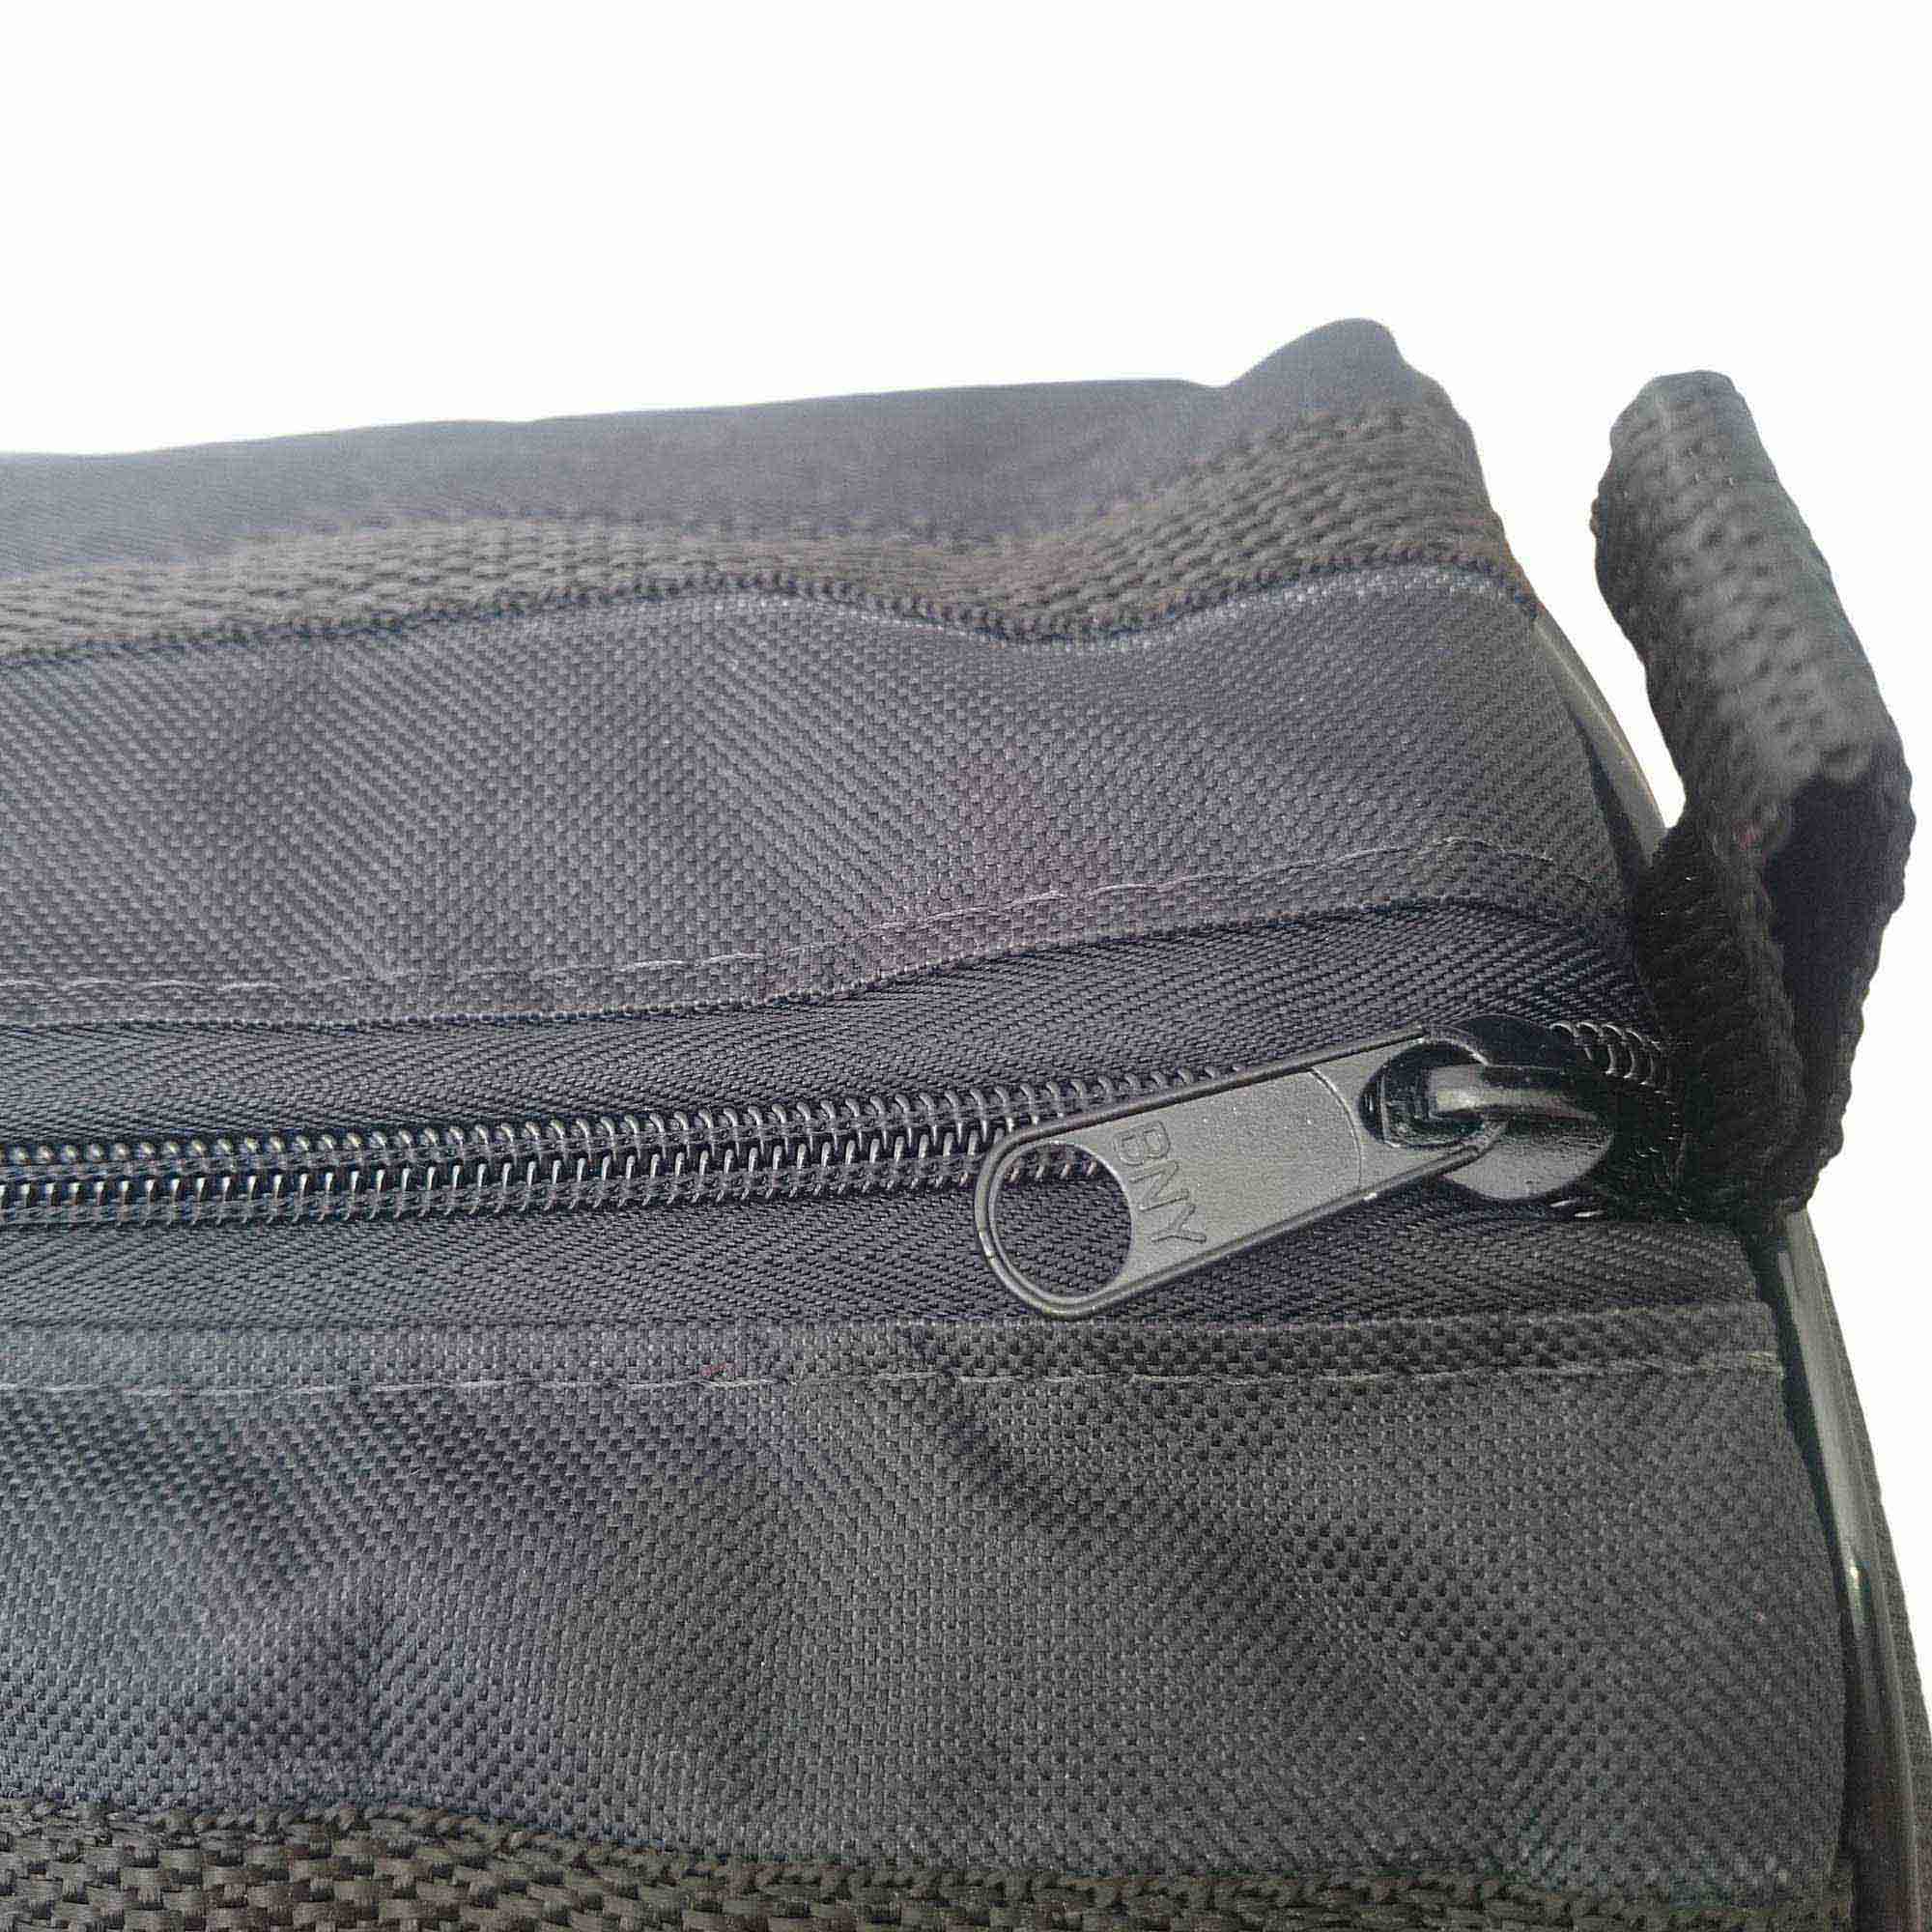 Capa Bag Extra Luxo, Clave & Bag, 4 em 1 De 120 cm Acolchoada, P/ Ferragens De Bateria.